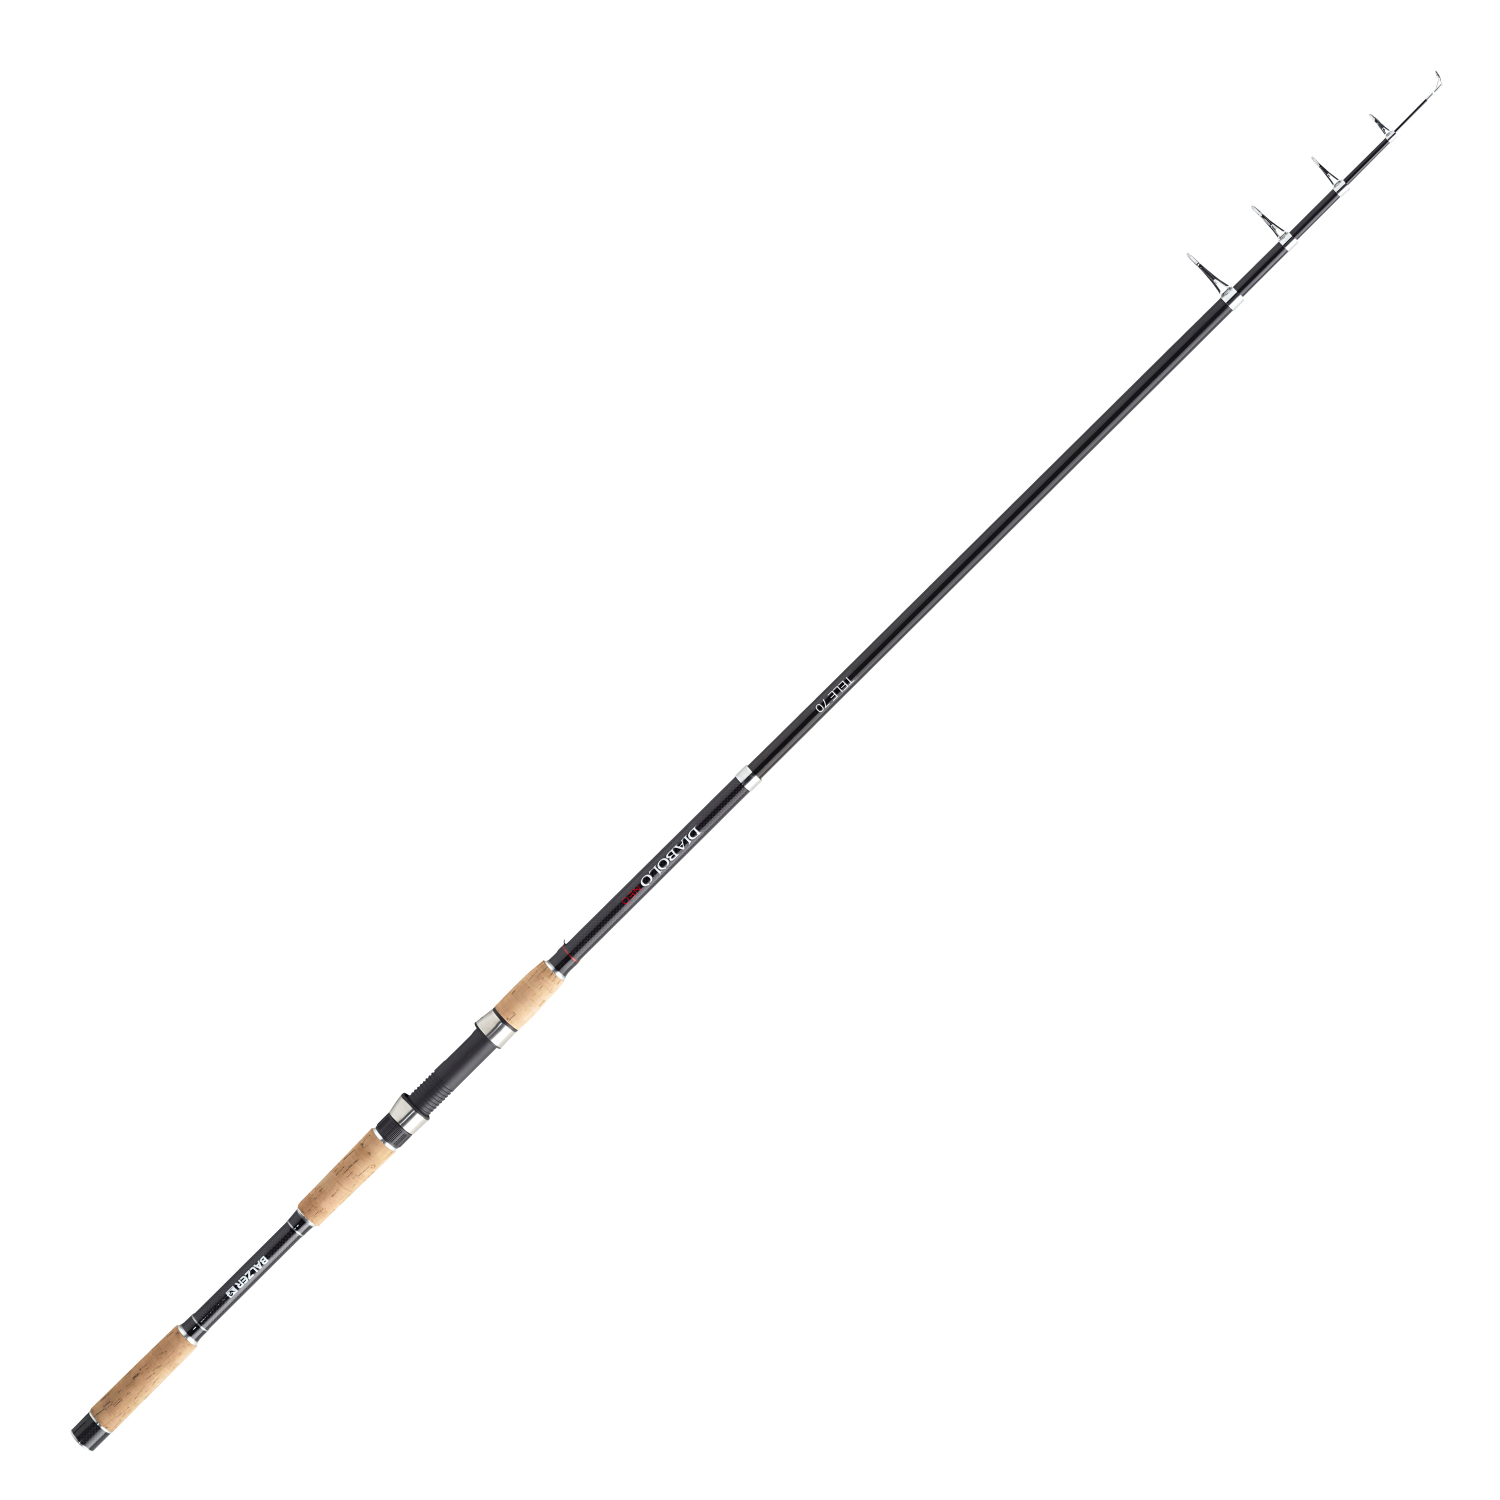 Balzer Balzer Diabolo Neo Tele 70 Fishing Rod 